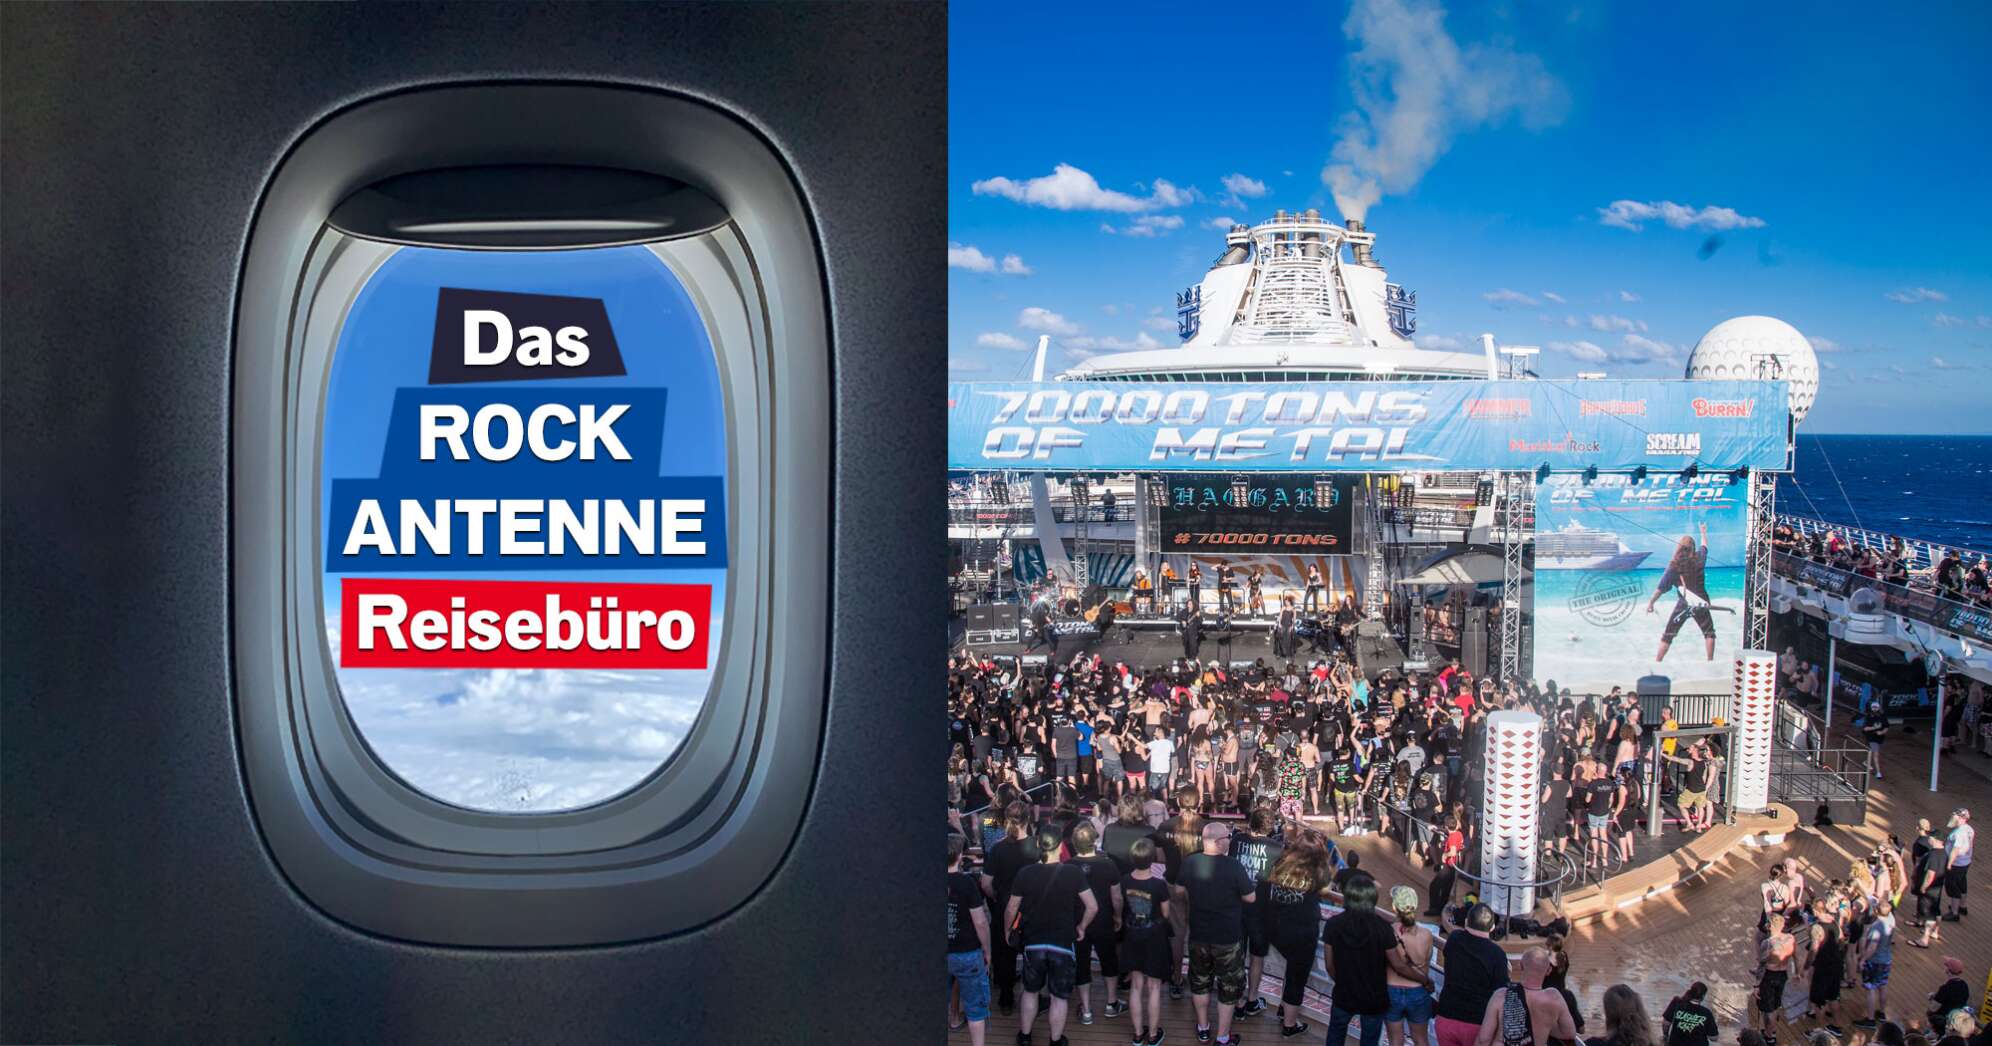 Ein Bild von einem Flugzeugfenster mit Schriftzug "Das ROCK ANTENNE Reisebüro" und daneben ein Foto von der 70000 Tons of Metal Kreuzfahrt